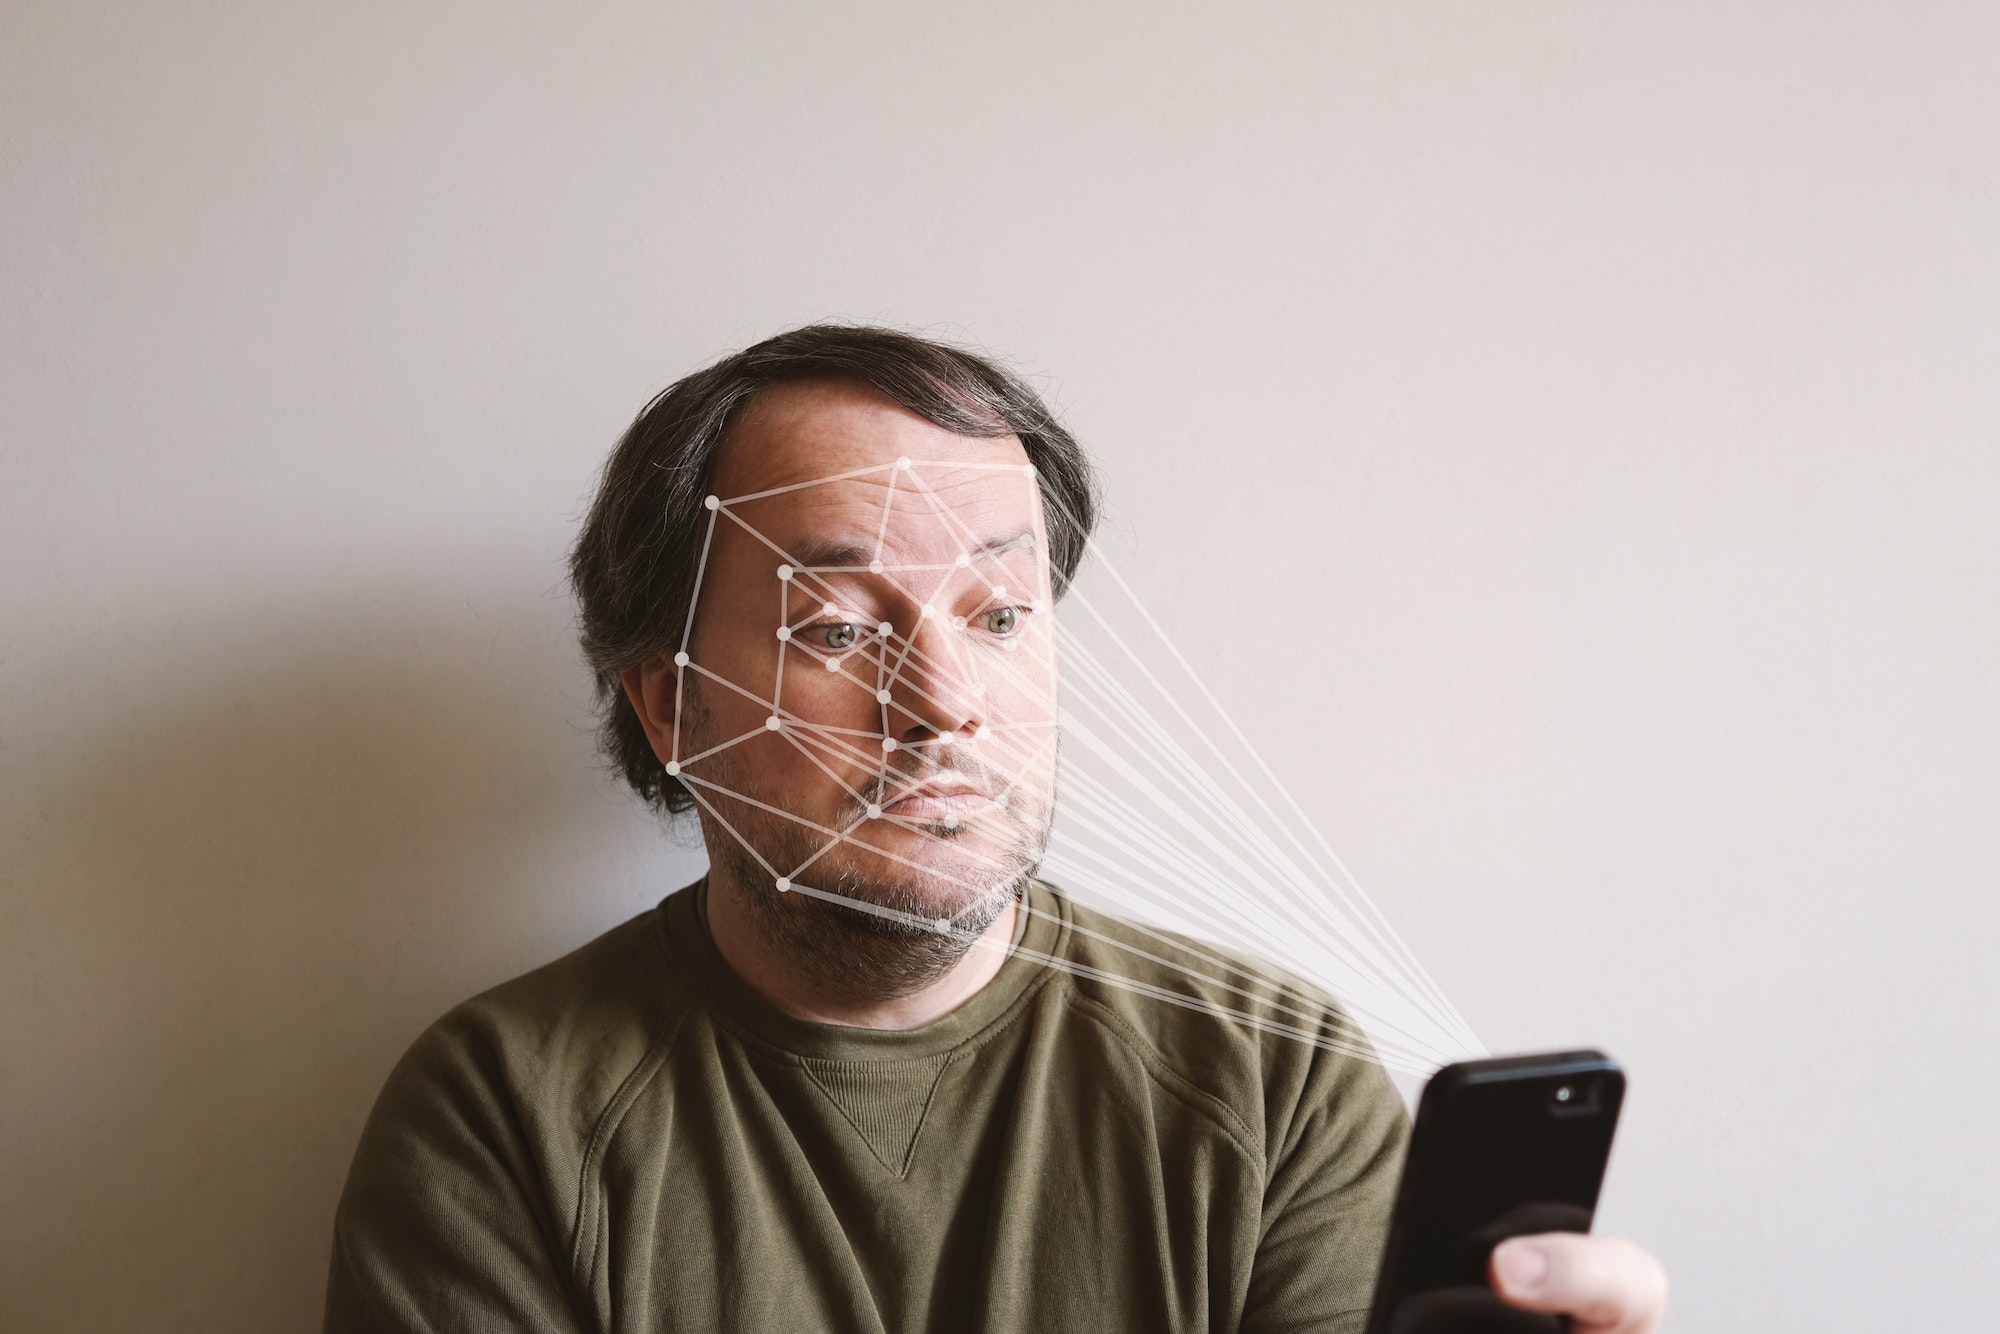 la reconnaissance faciale par smartphone permet l'authentification biométrique et le suivi de l'expression du visage